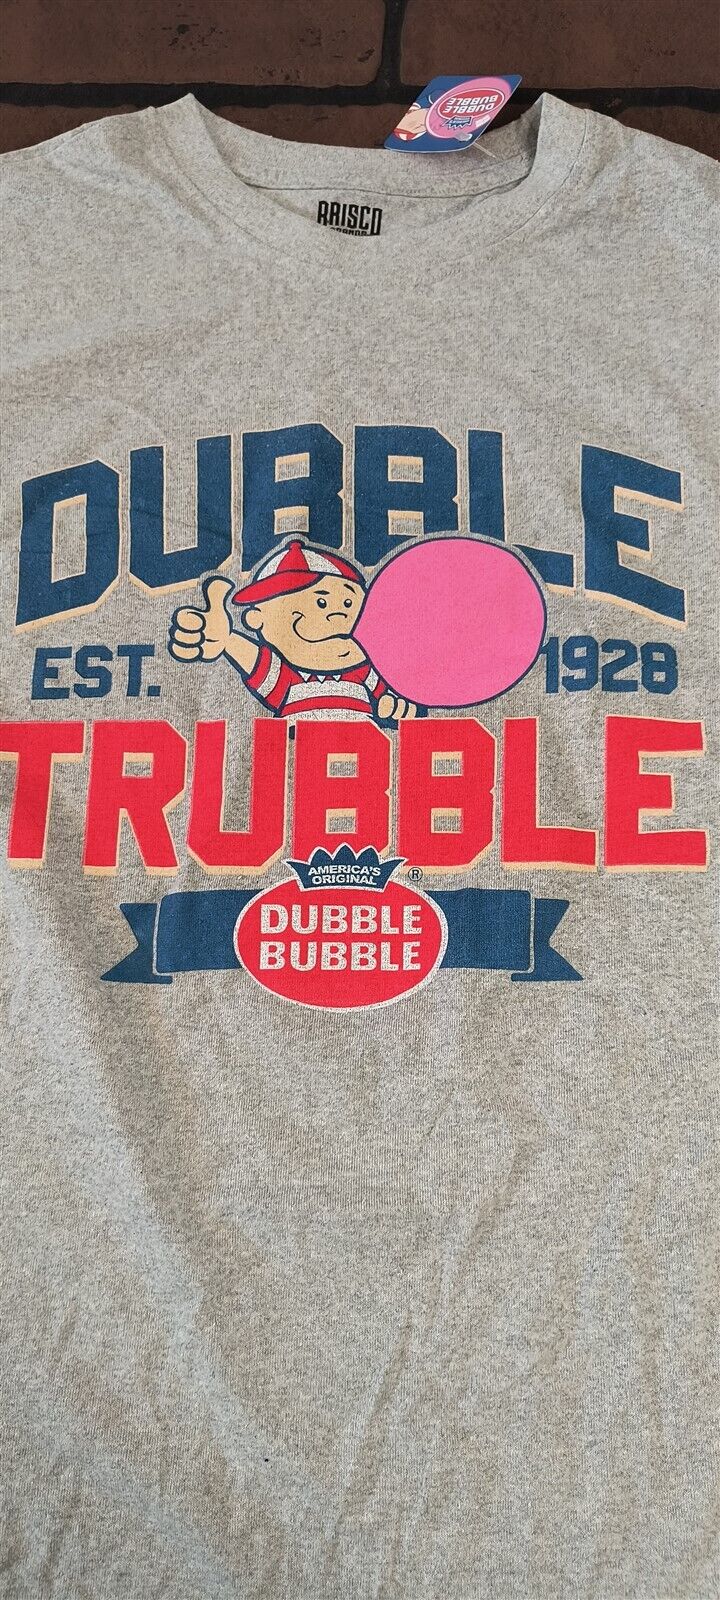 DUBBLE TRUBBLE Bubble Gum w/ Pud-2019 Gray T-shirt ~Licensed /Never Worn~ M L XL